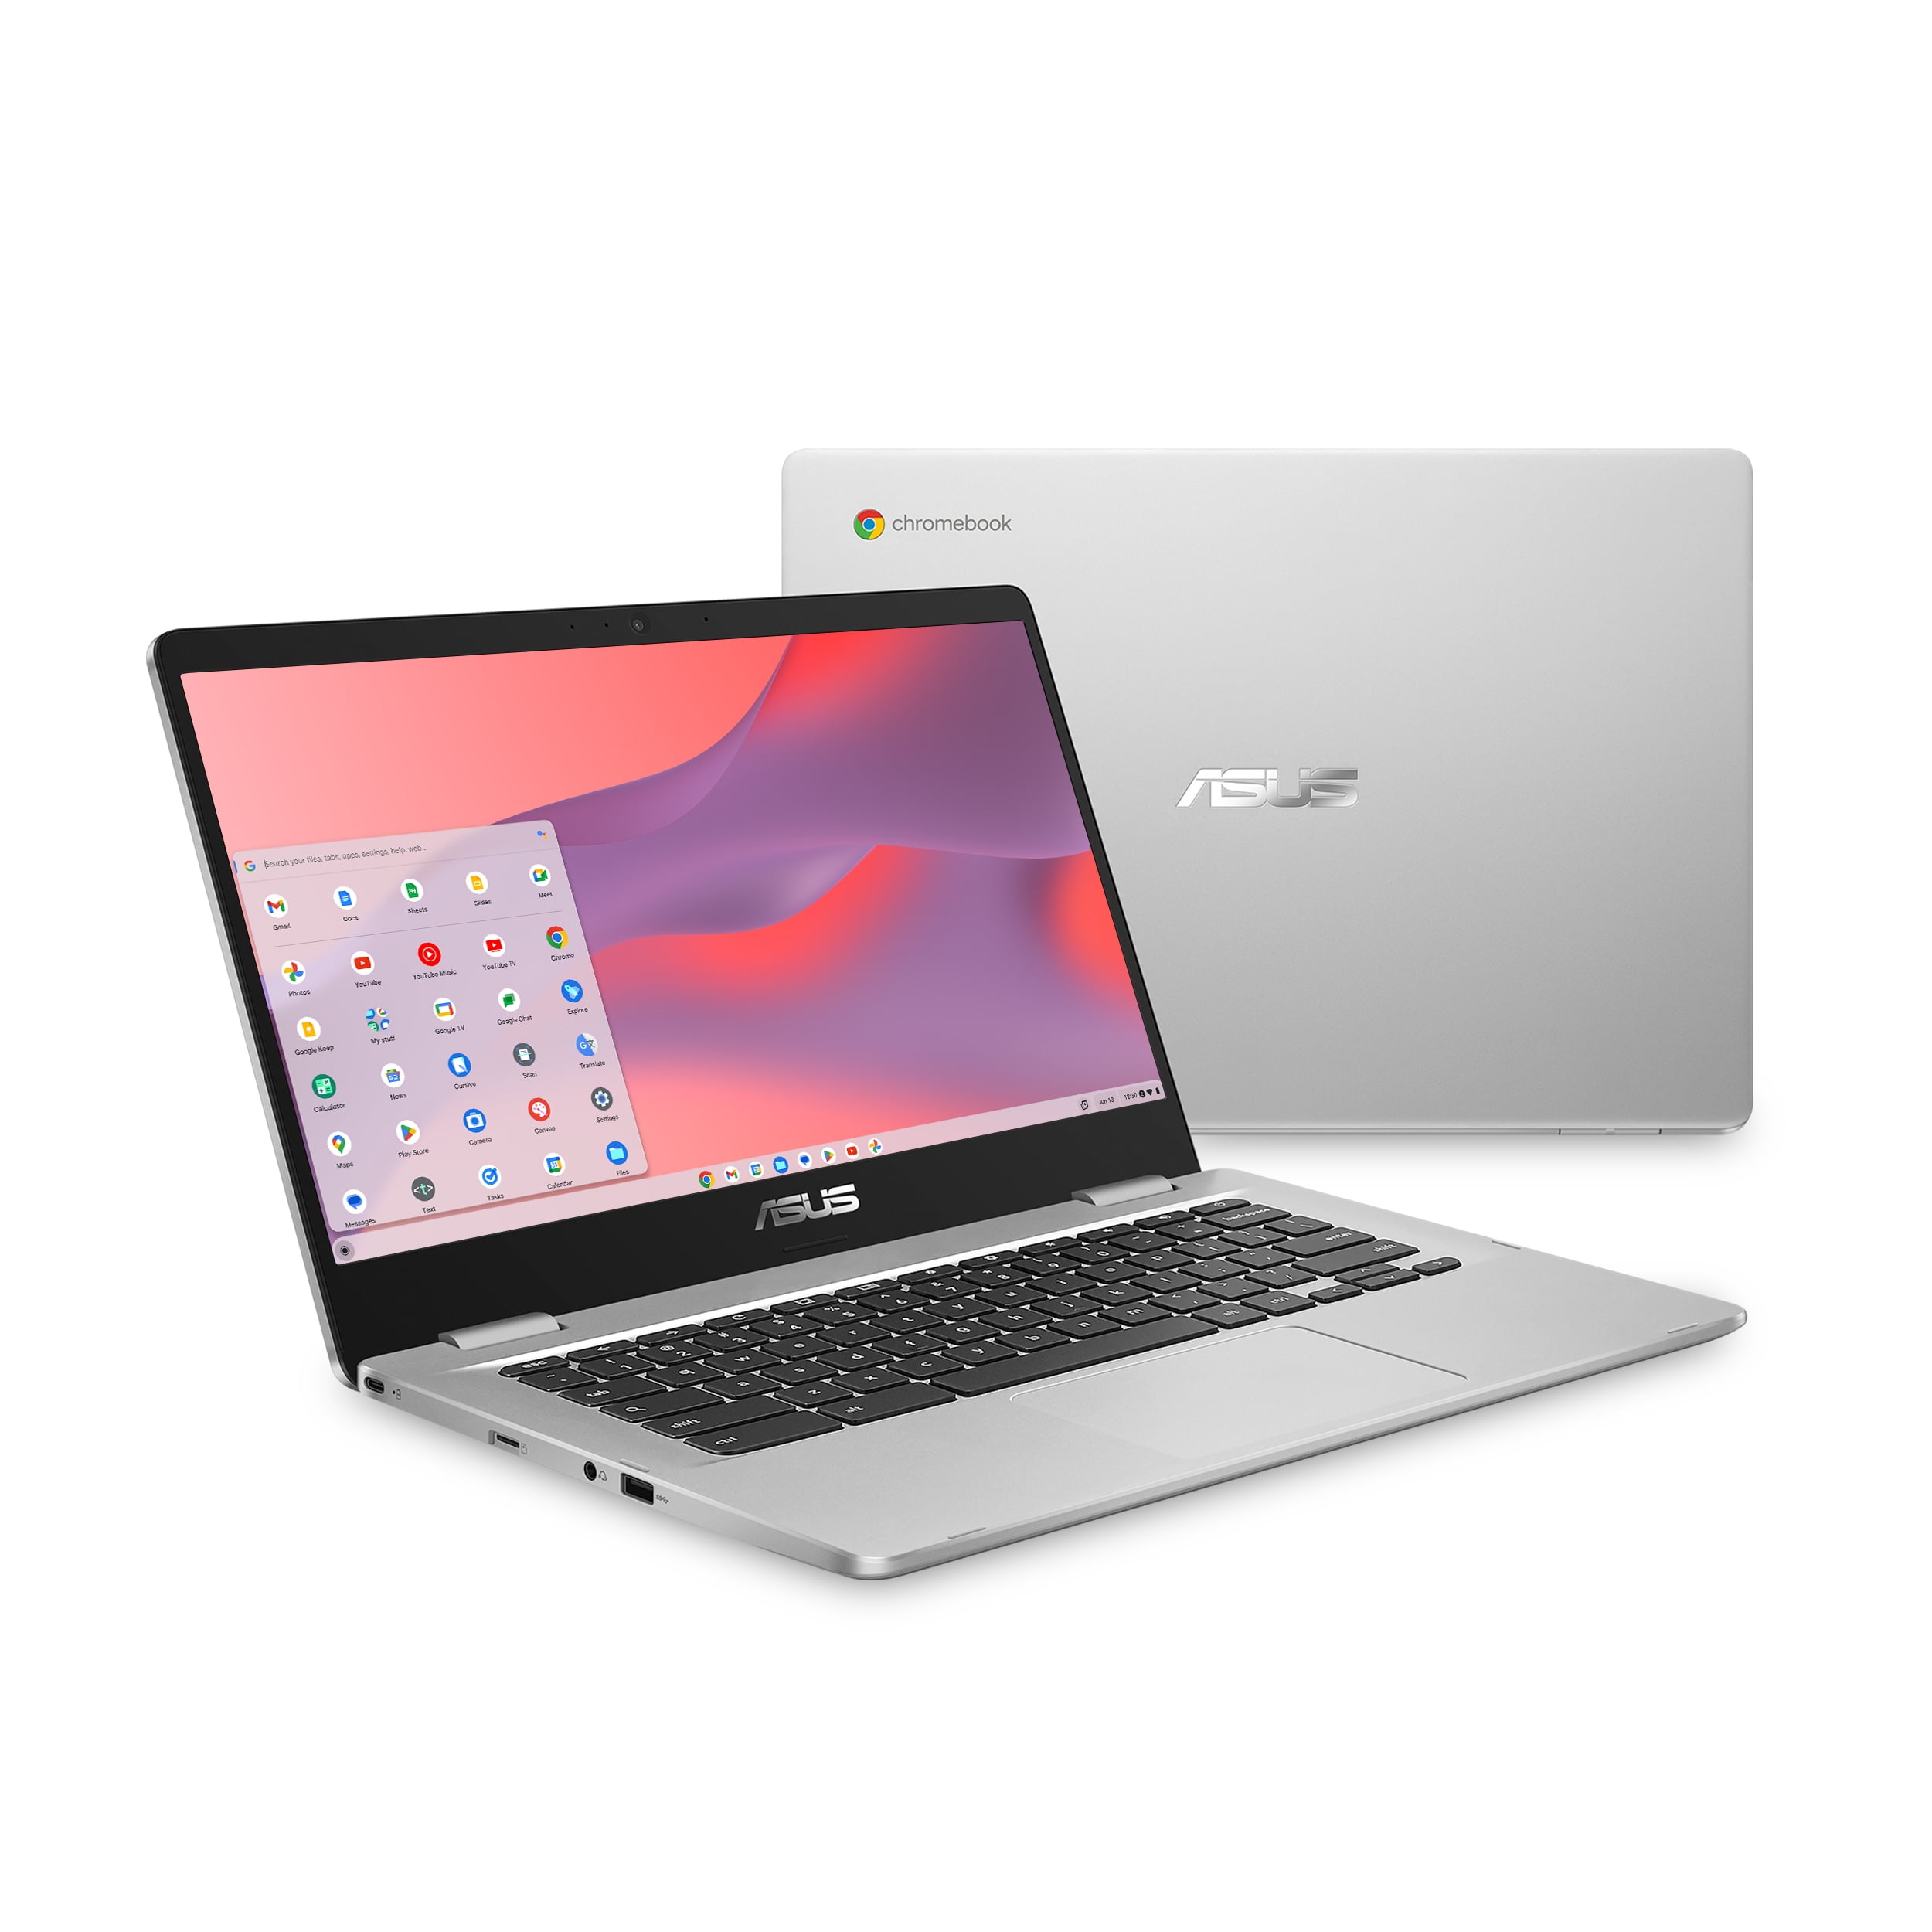 【未使用】ASUS Chromebook C424MA 14型 ノートパソコン